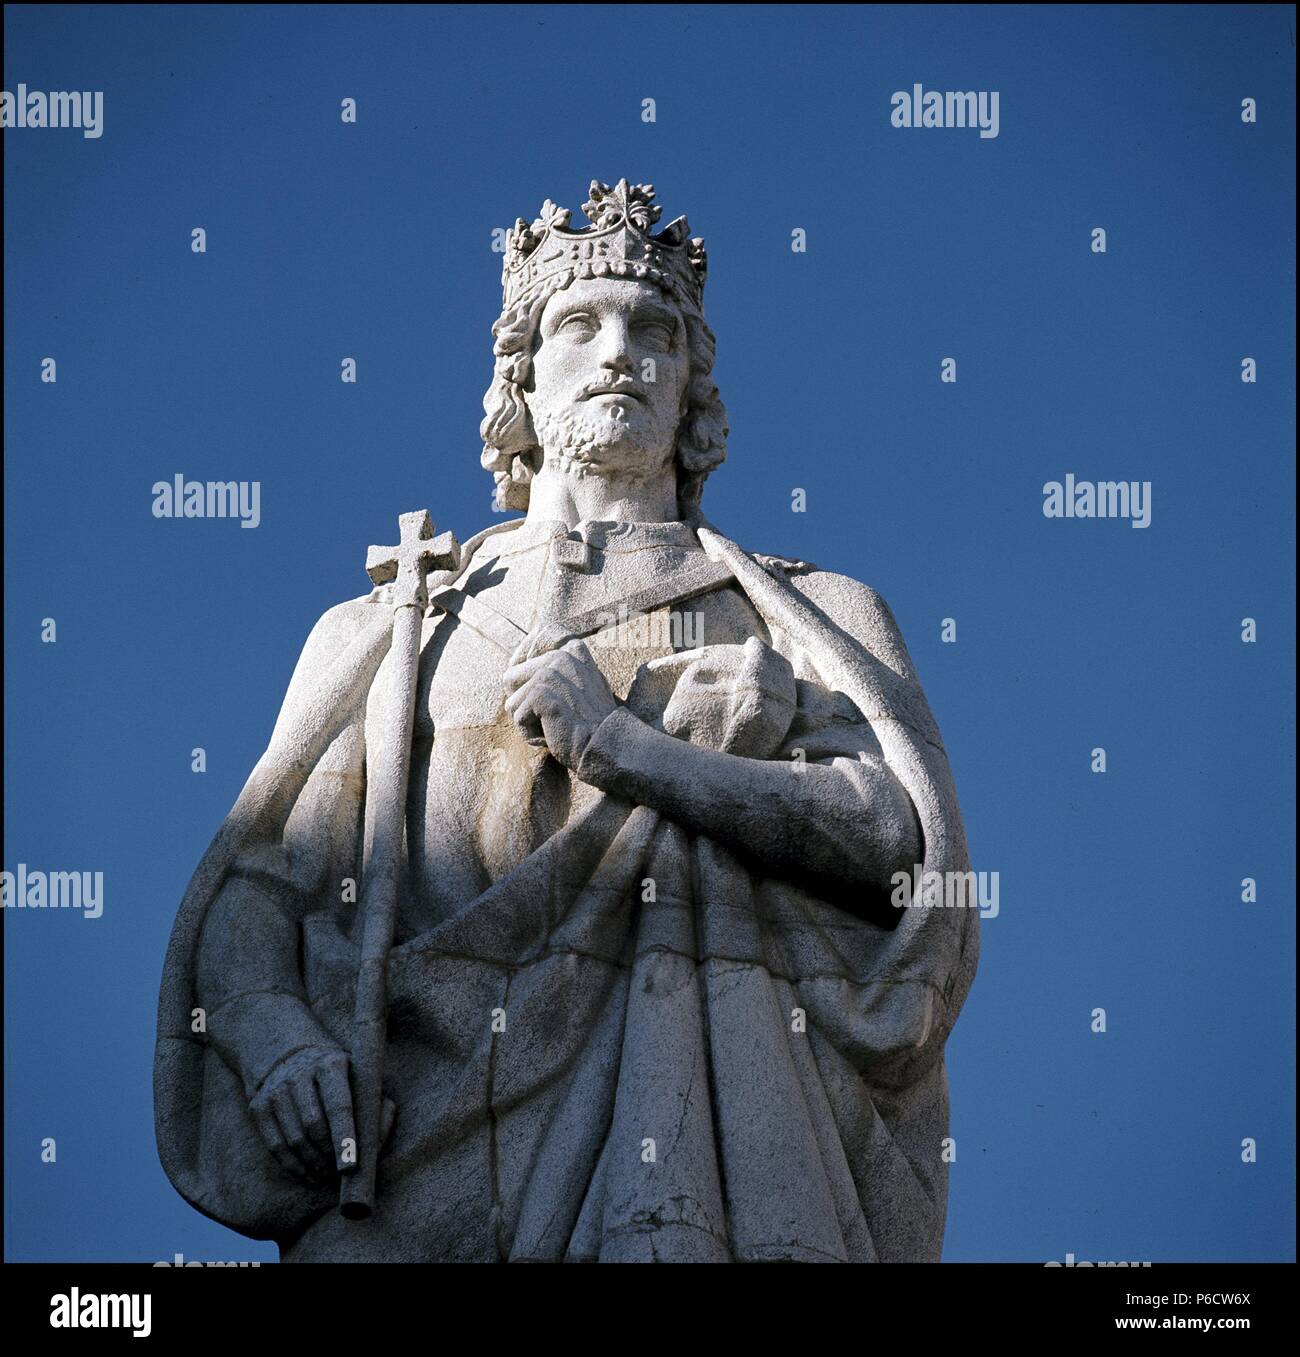 JUAN III EL PIADOSO. REY DE PORTUGAL. 1502-1557. MONUMENTO EN COIMBRA (PORTUGAL), JUNTO A LA UNIVERSIDAD QUE INSTITUYERA EN 1537. Stock Photo